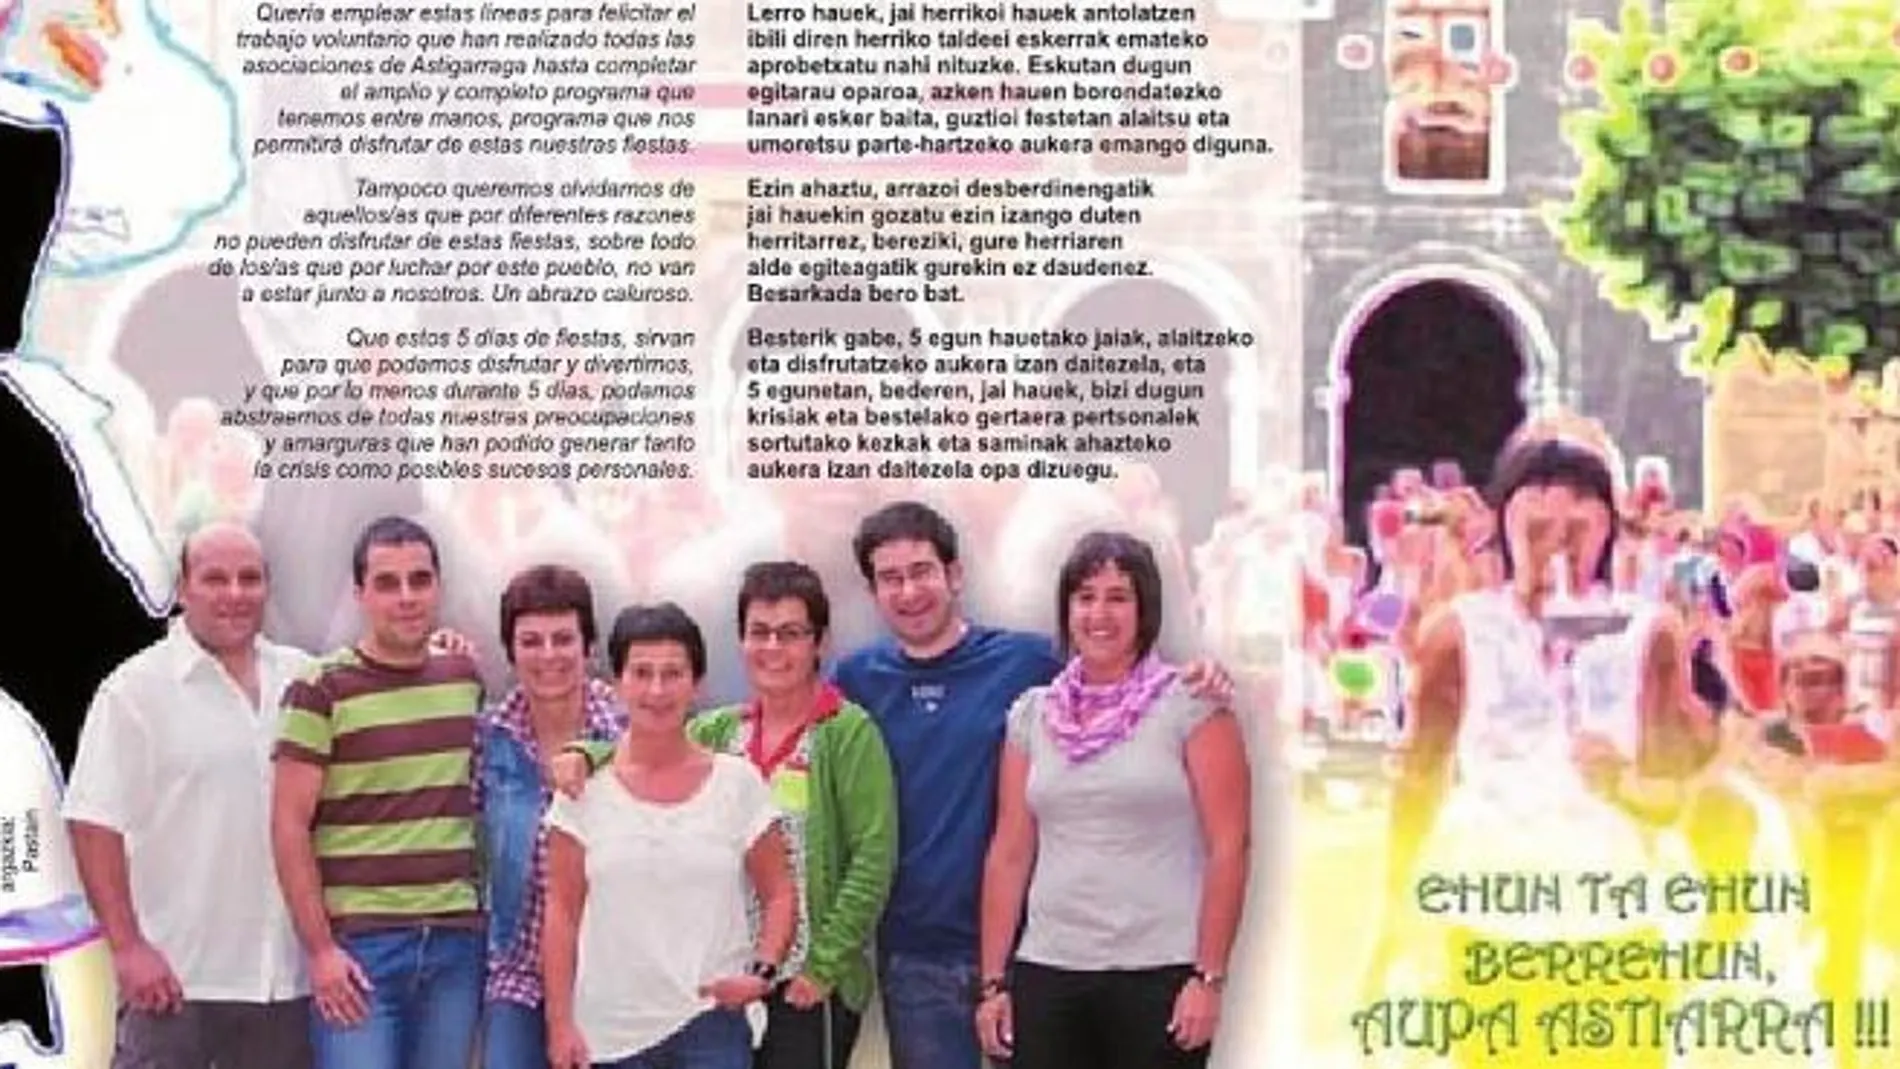 Imagen del programa de fiestas de Astigarraga en el que siete concejales de Bildu animan a presos etarras